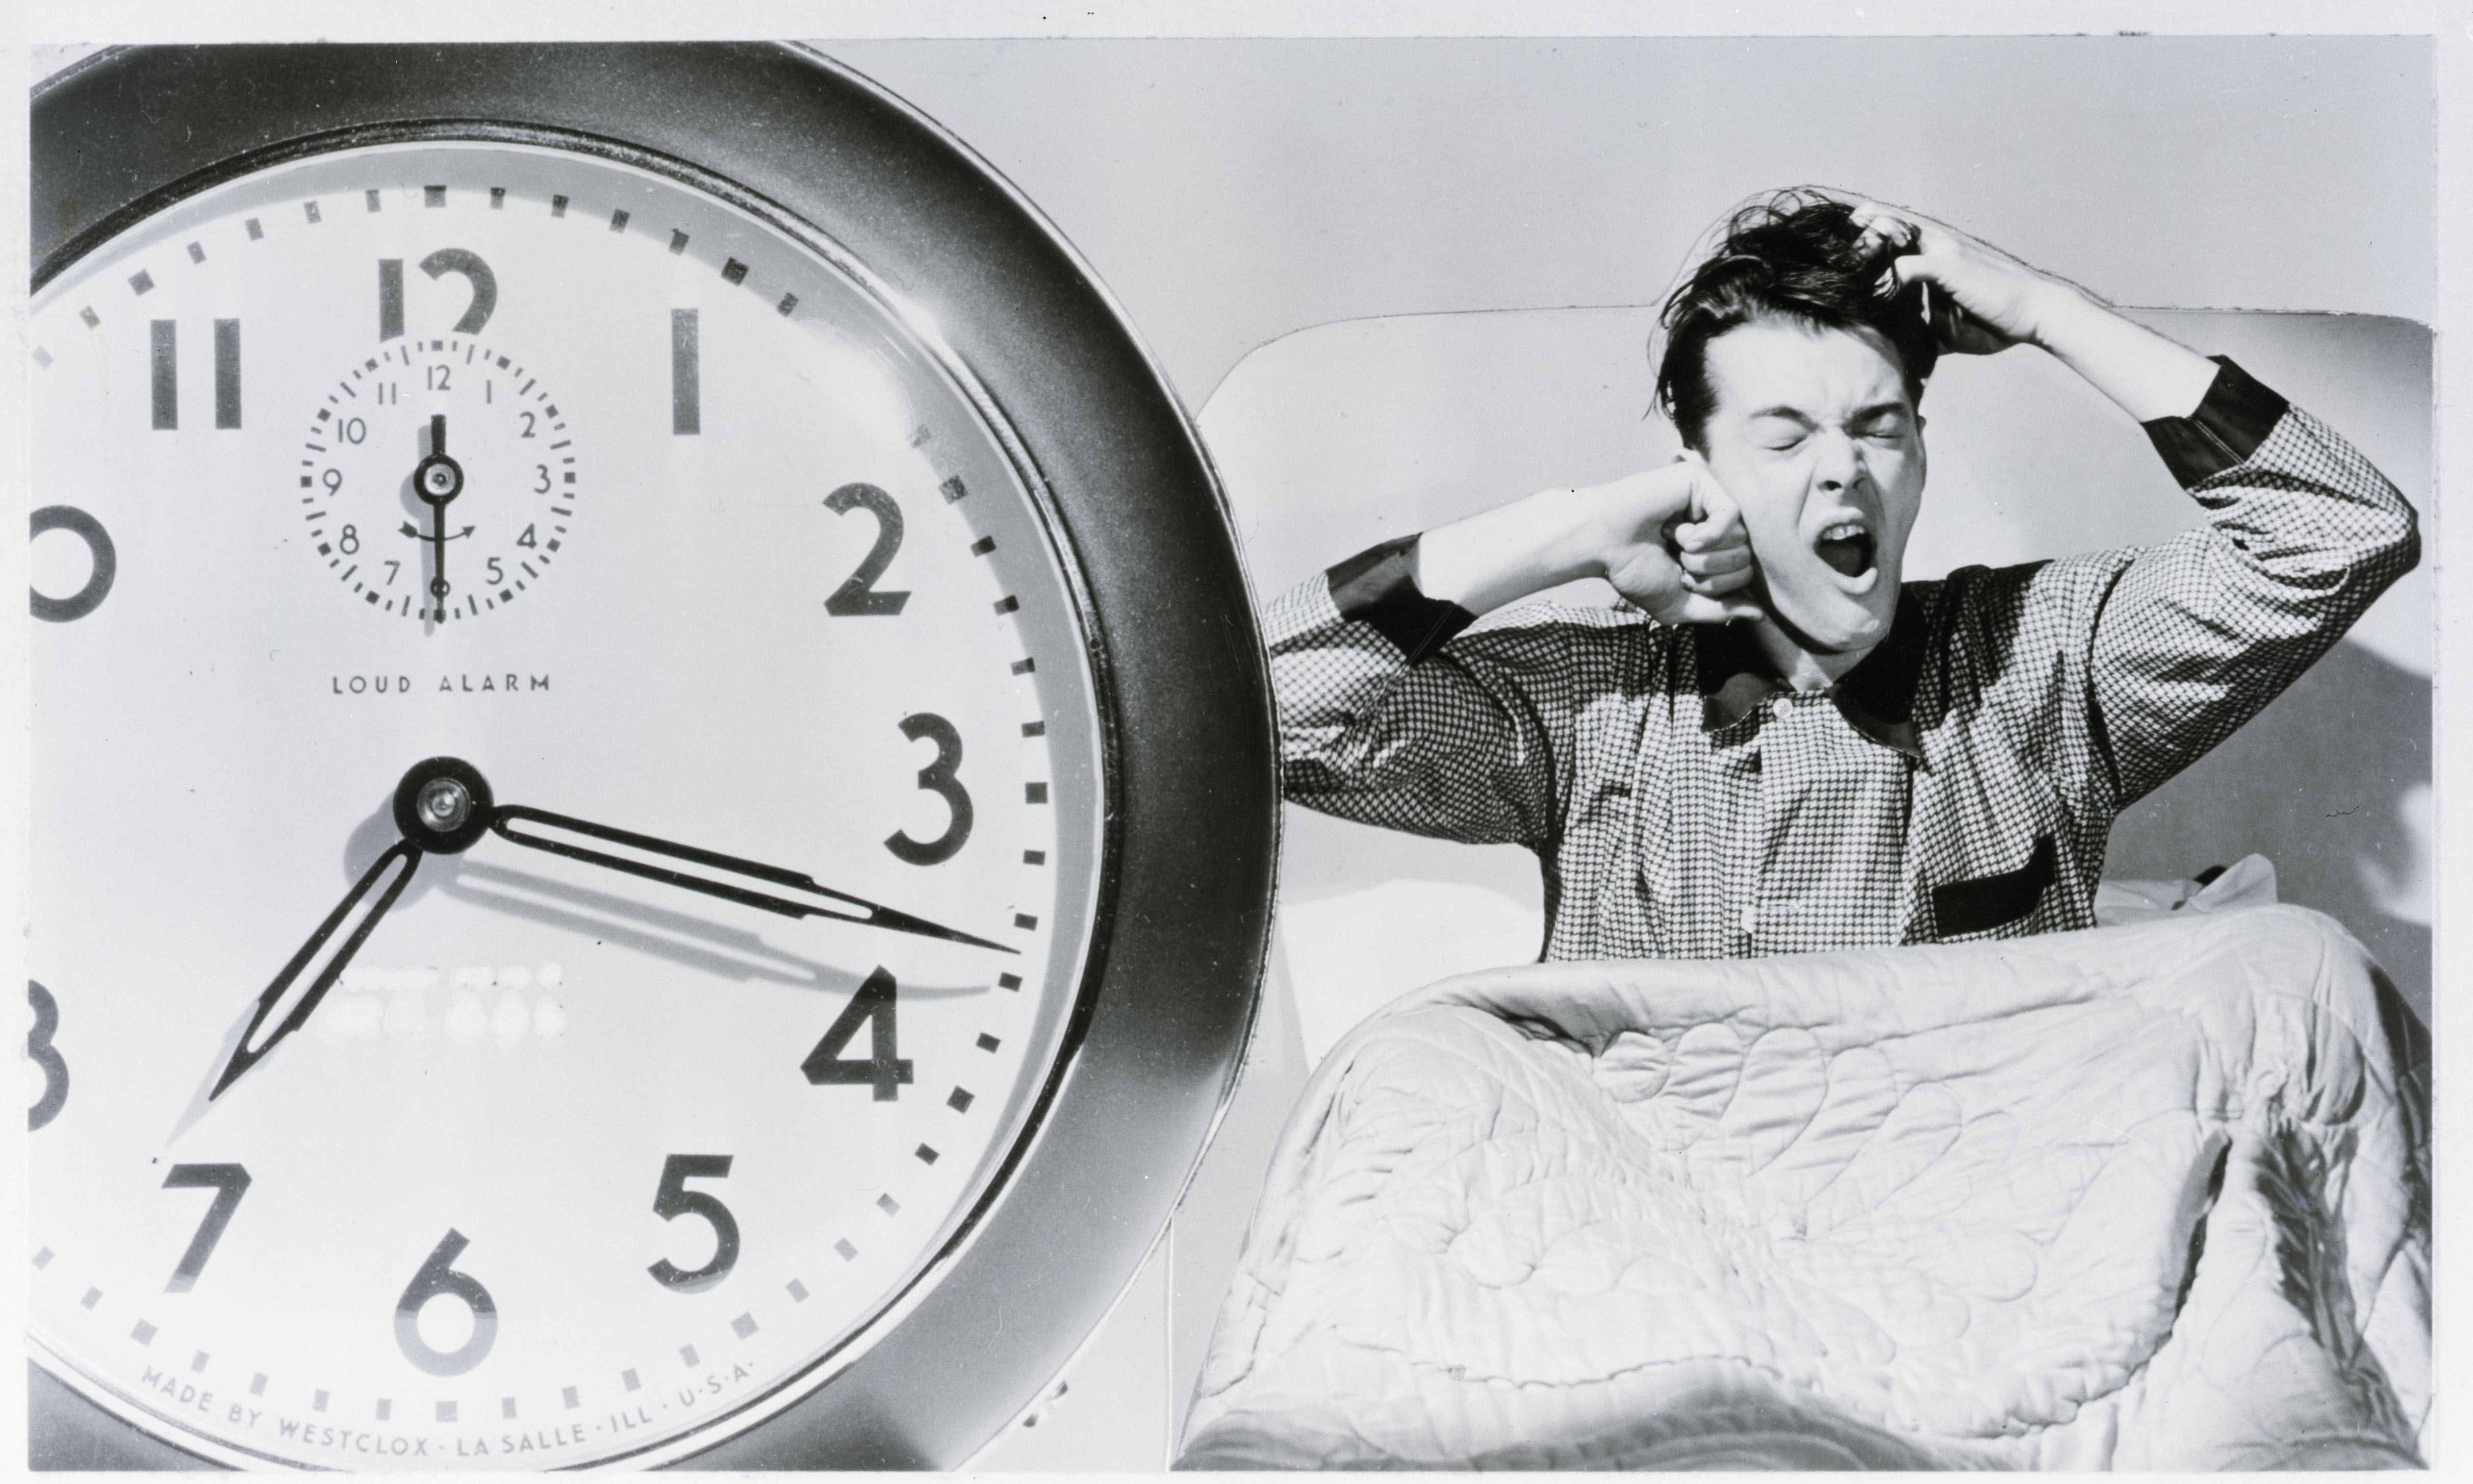 Para dormir mejor: 6 cosas que debes dejar de hacer, según expertos